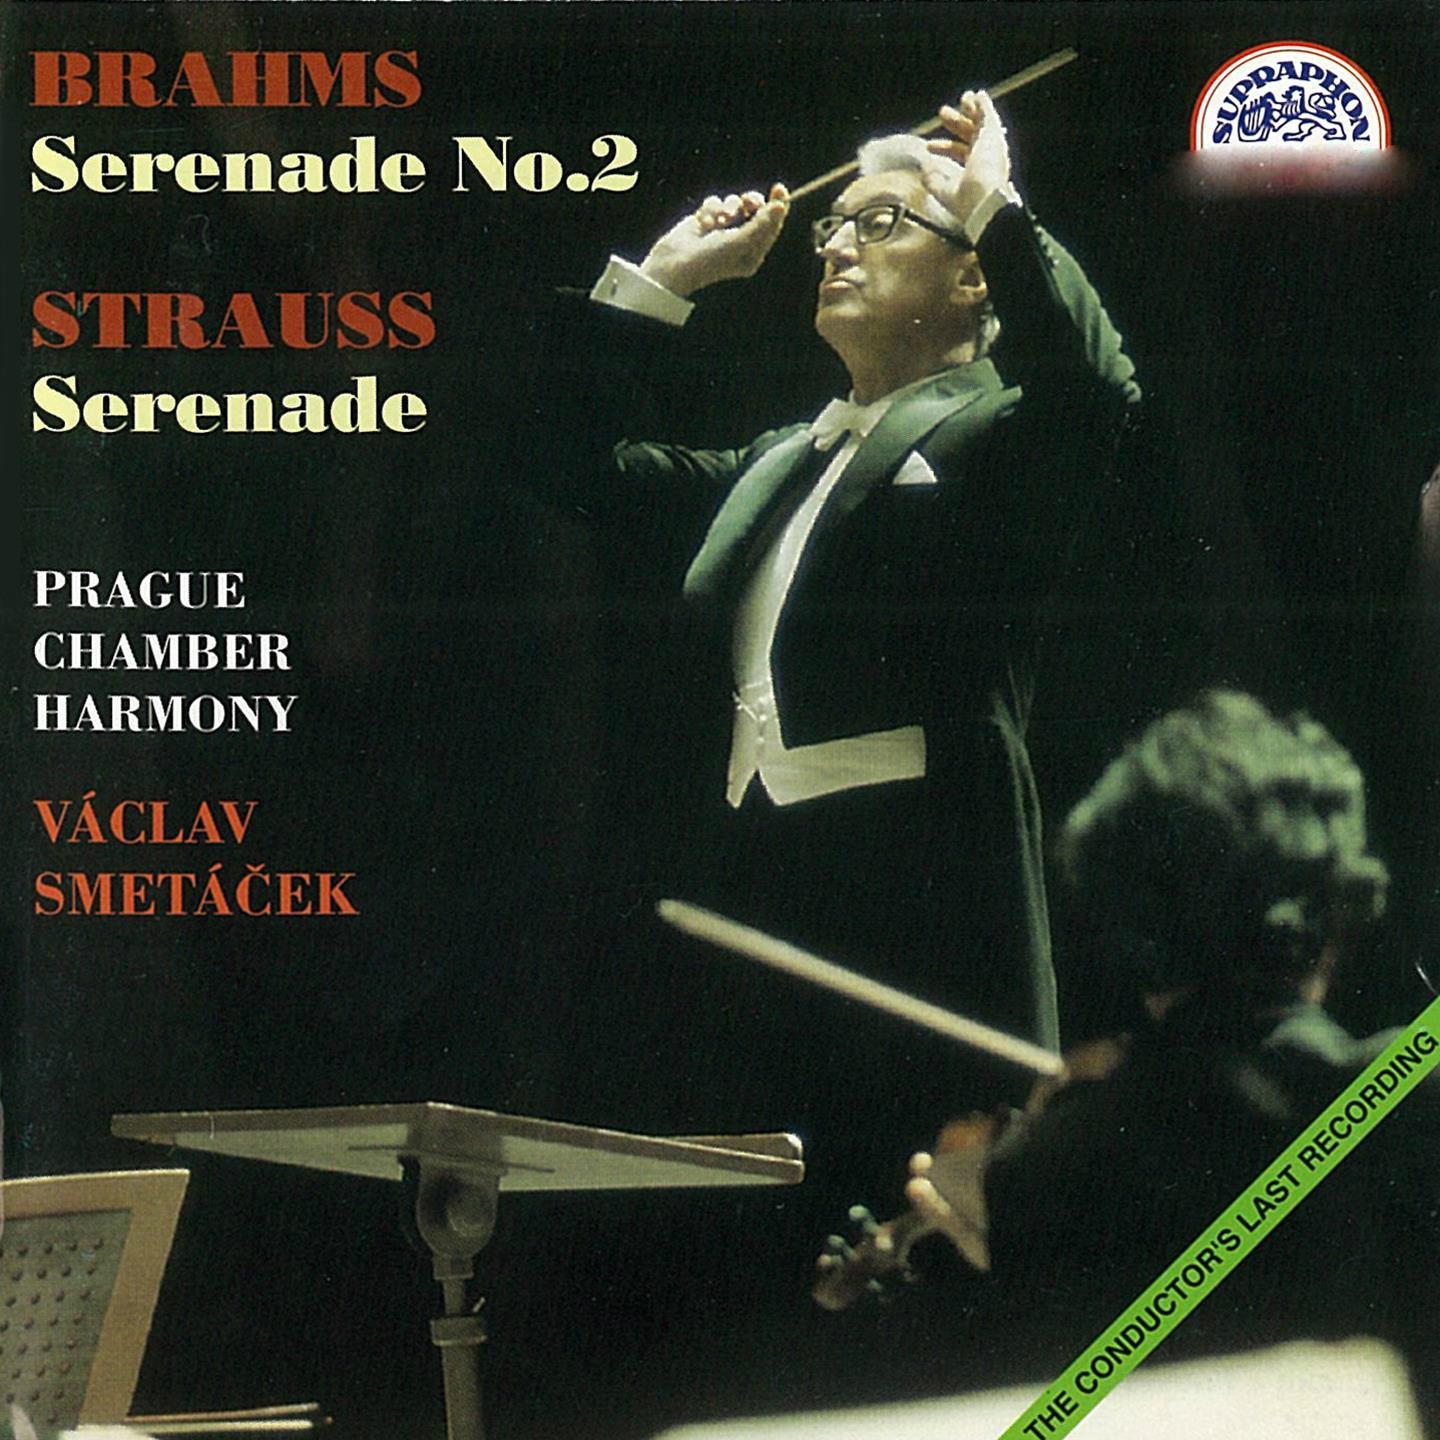 Brahms and Strauss: Serenades